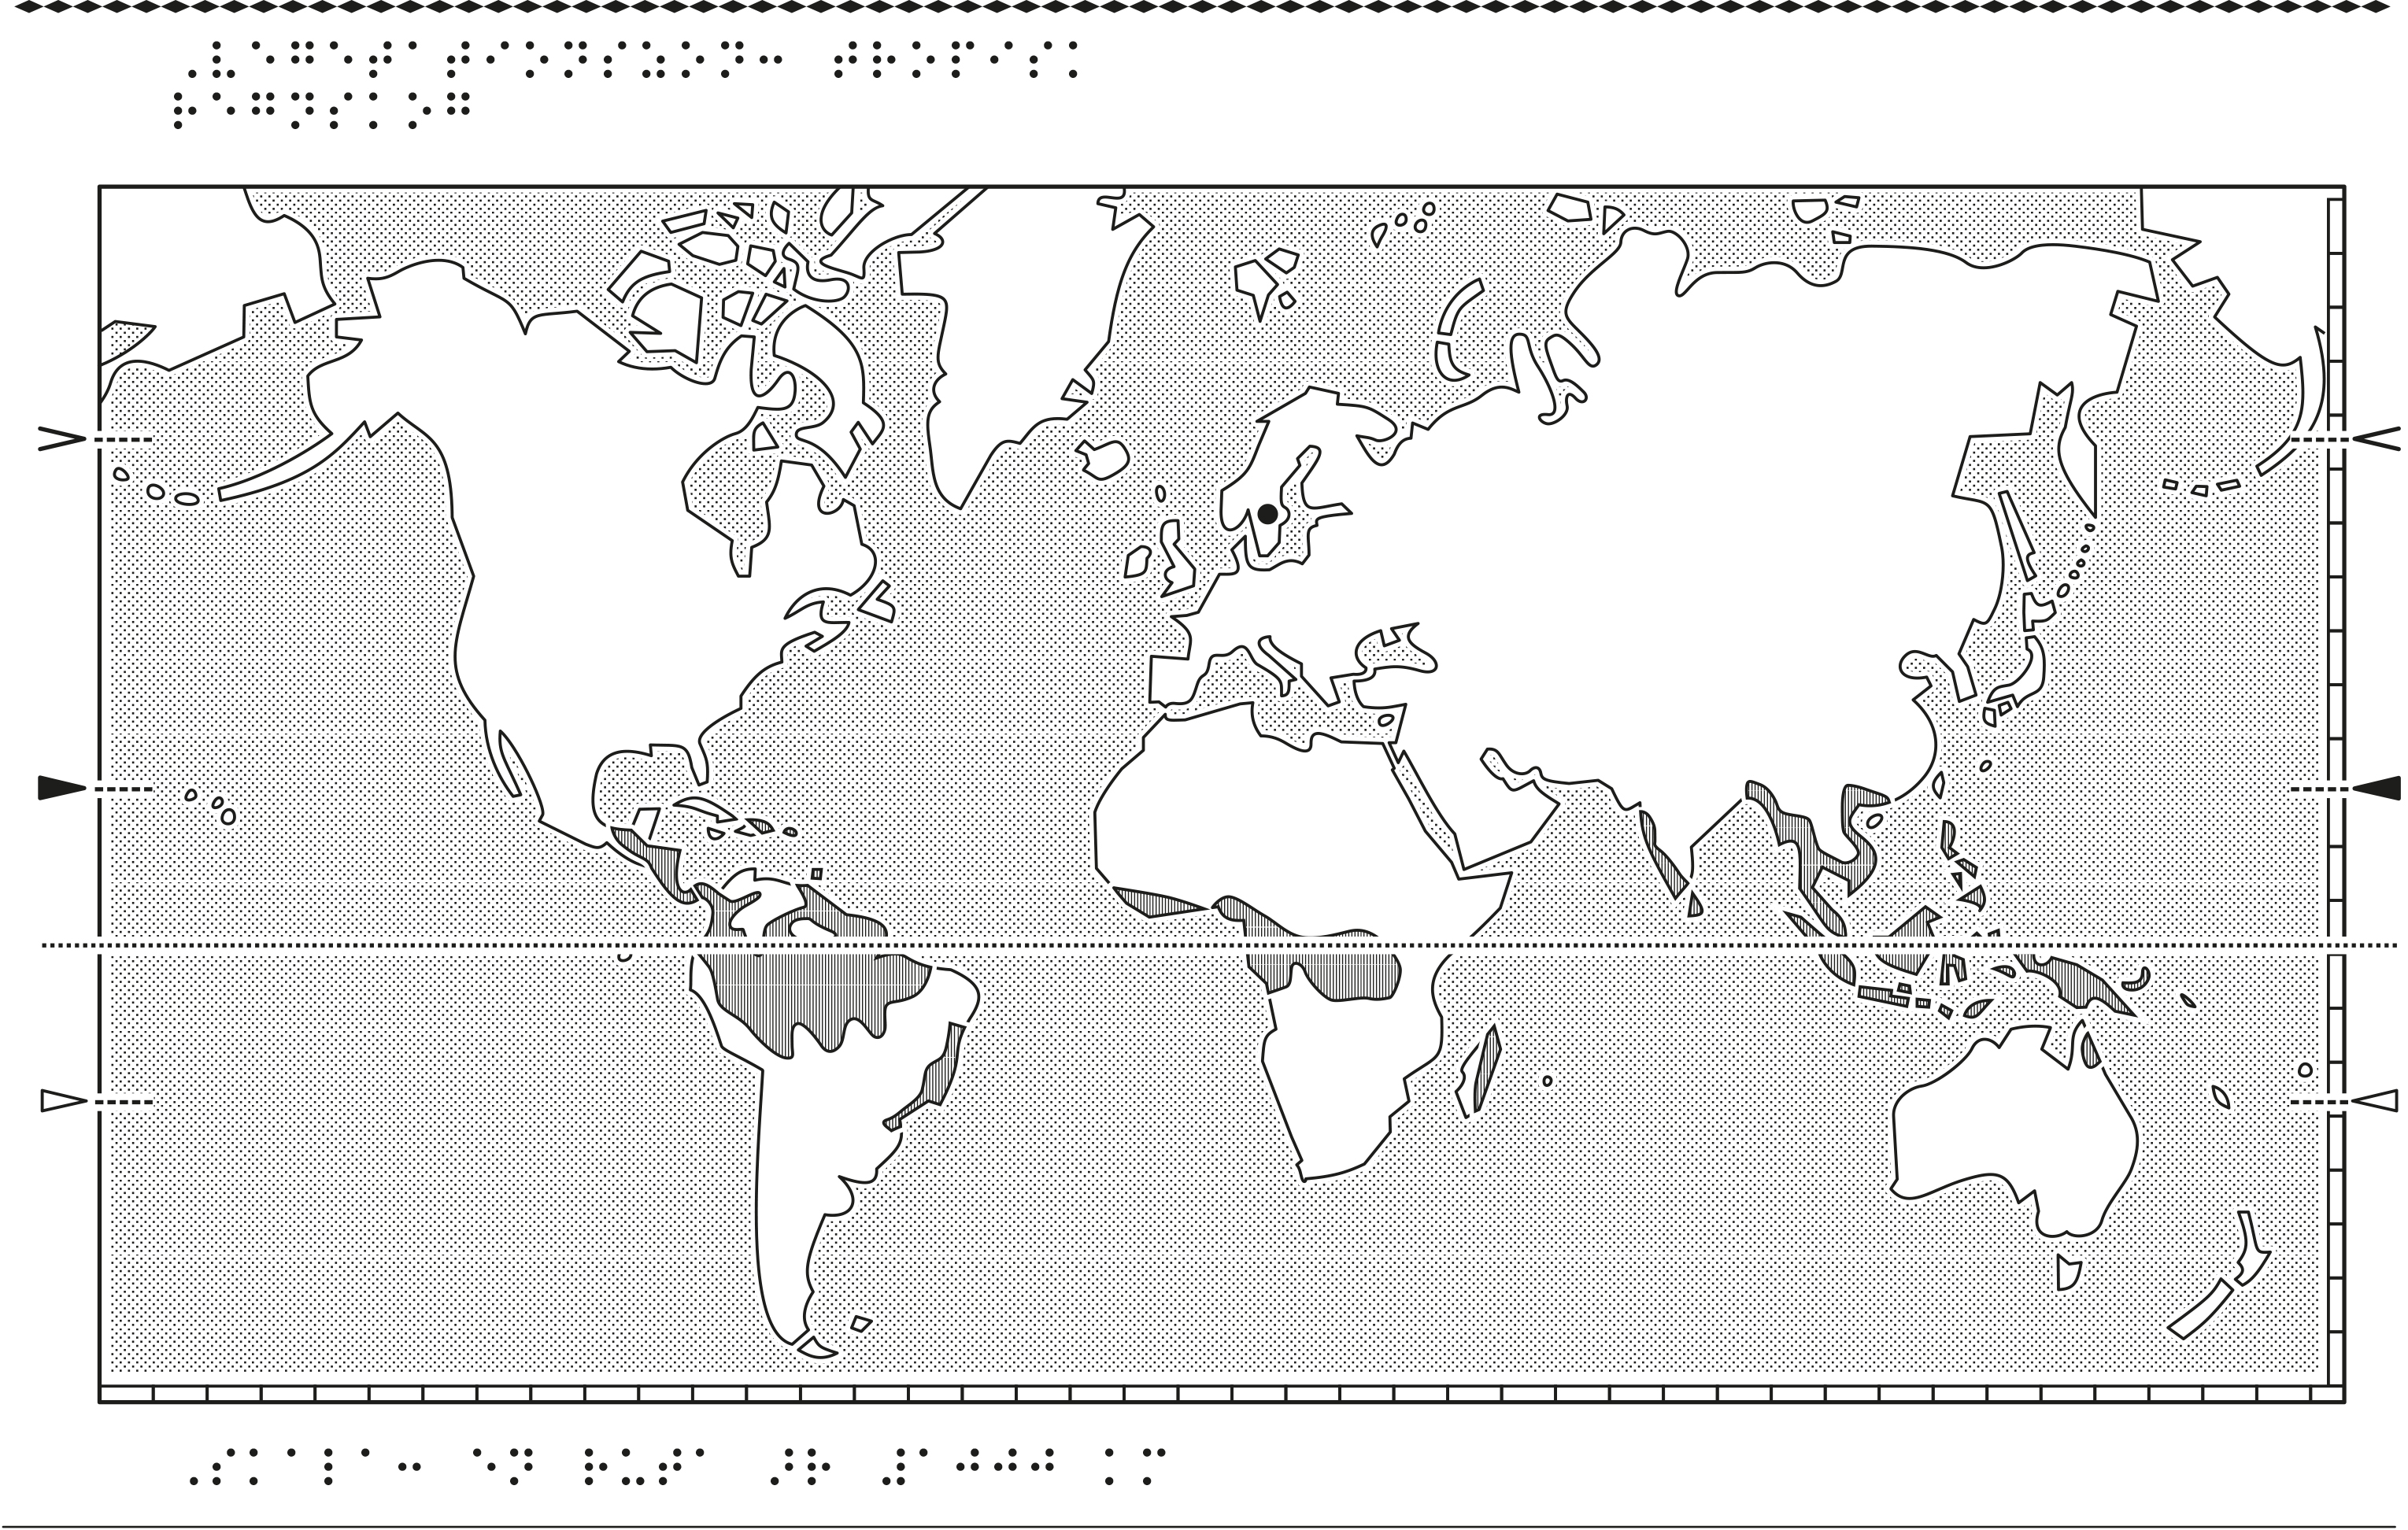 Världskarta i relief med regnskog markerat.